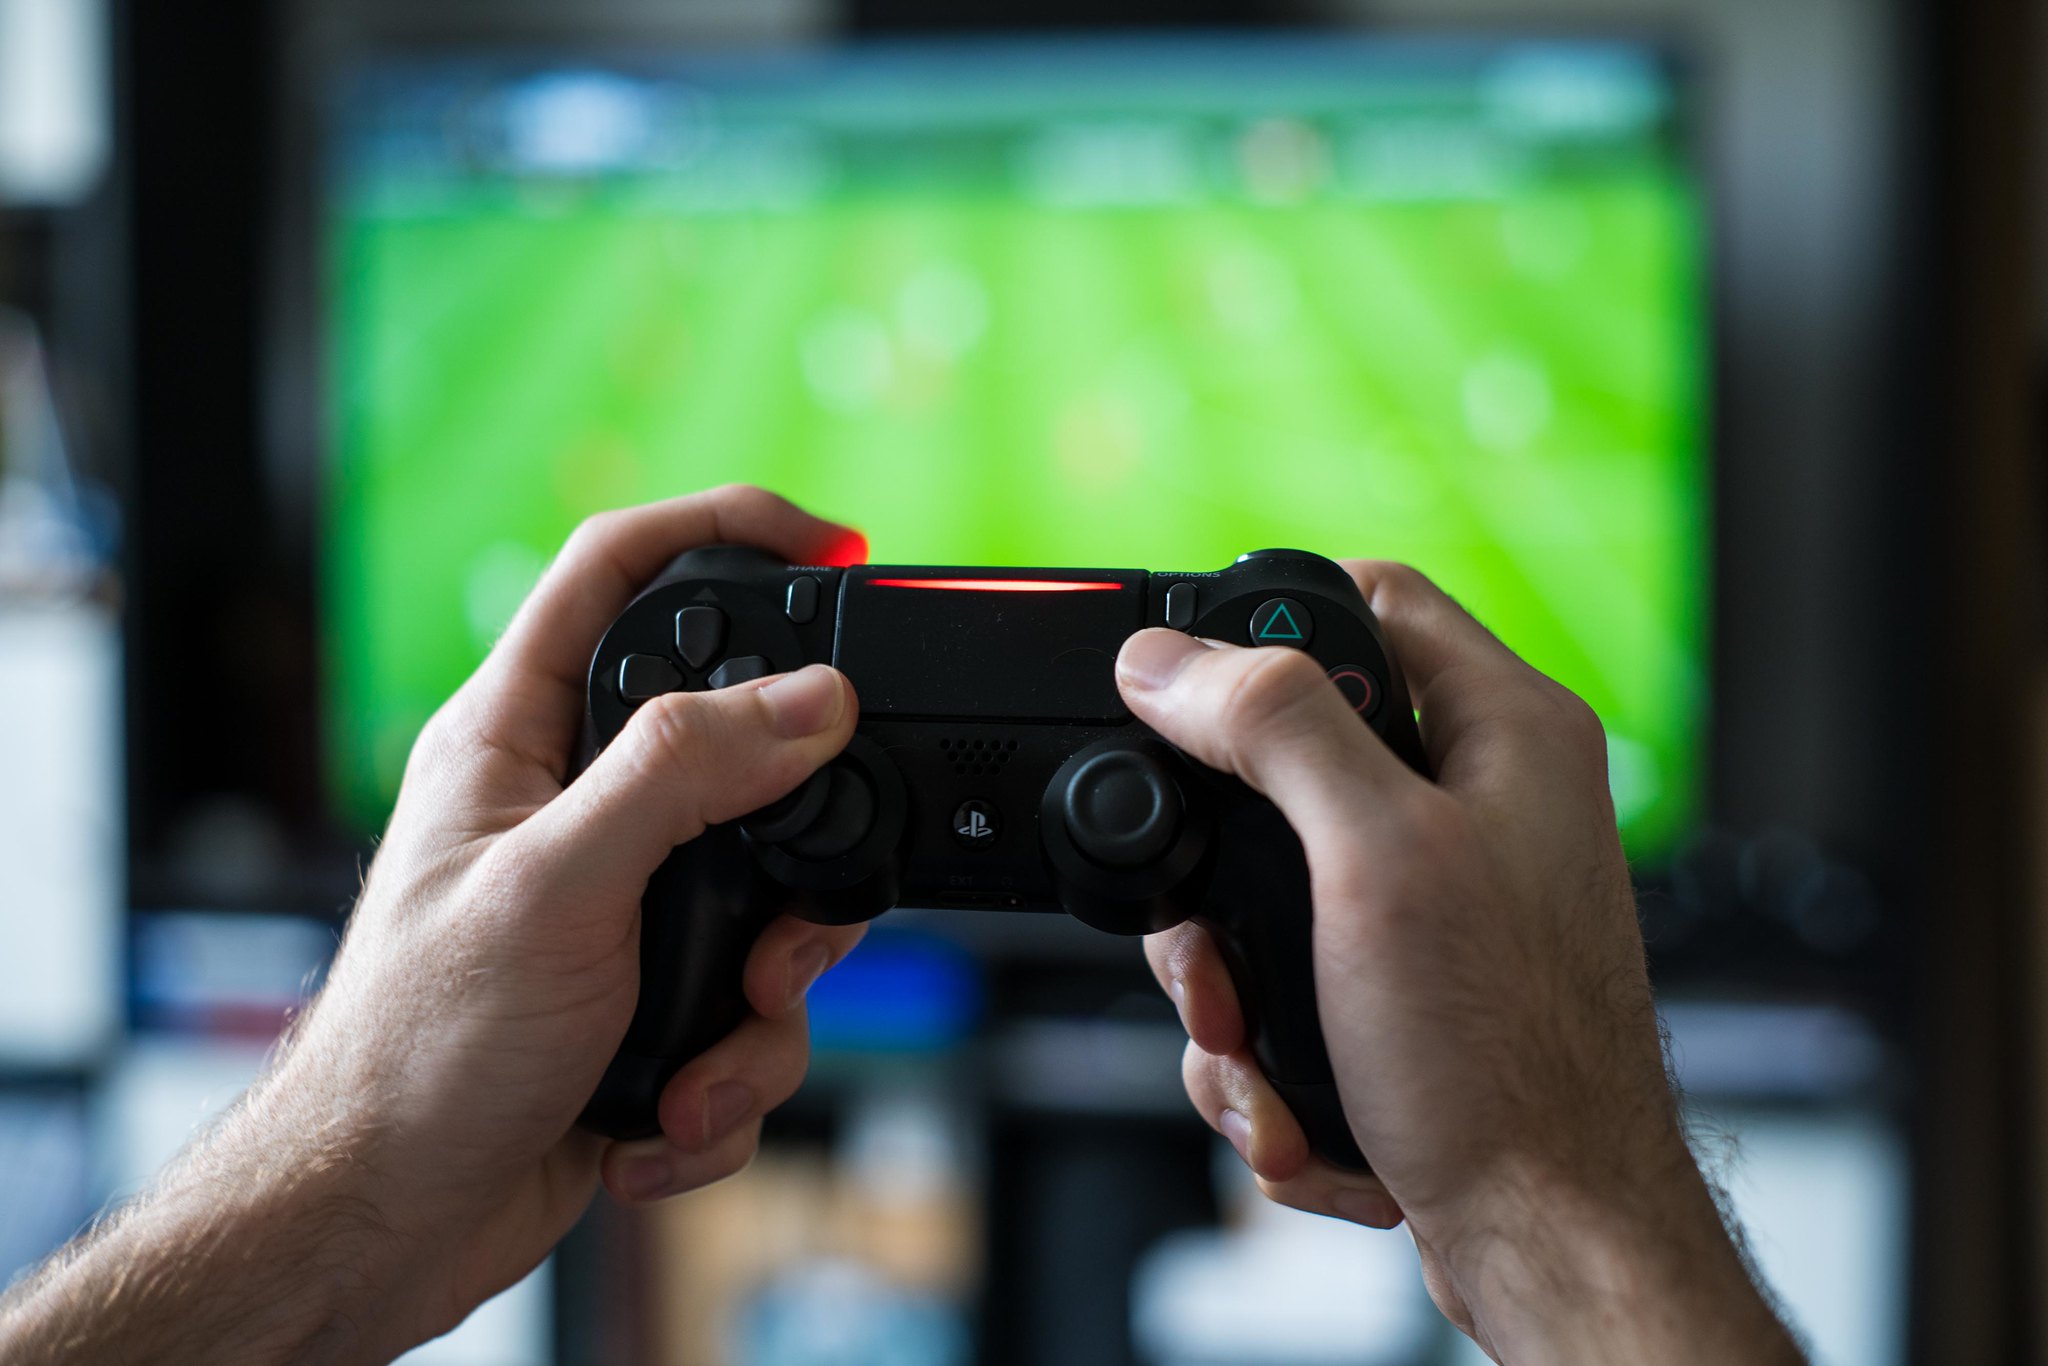 EA Menangguhkan Lebih dari 30.000 Akun FIFA 22 karena Menyalahgunakan Kesalahan Kompetitif